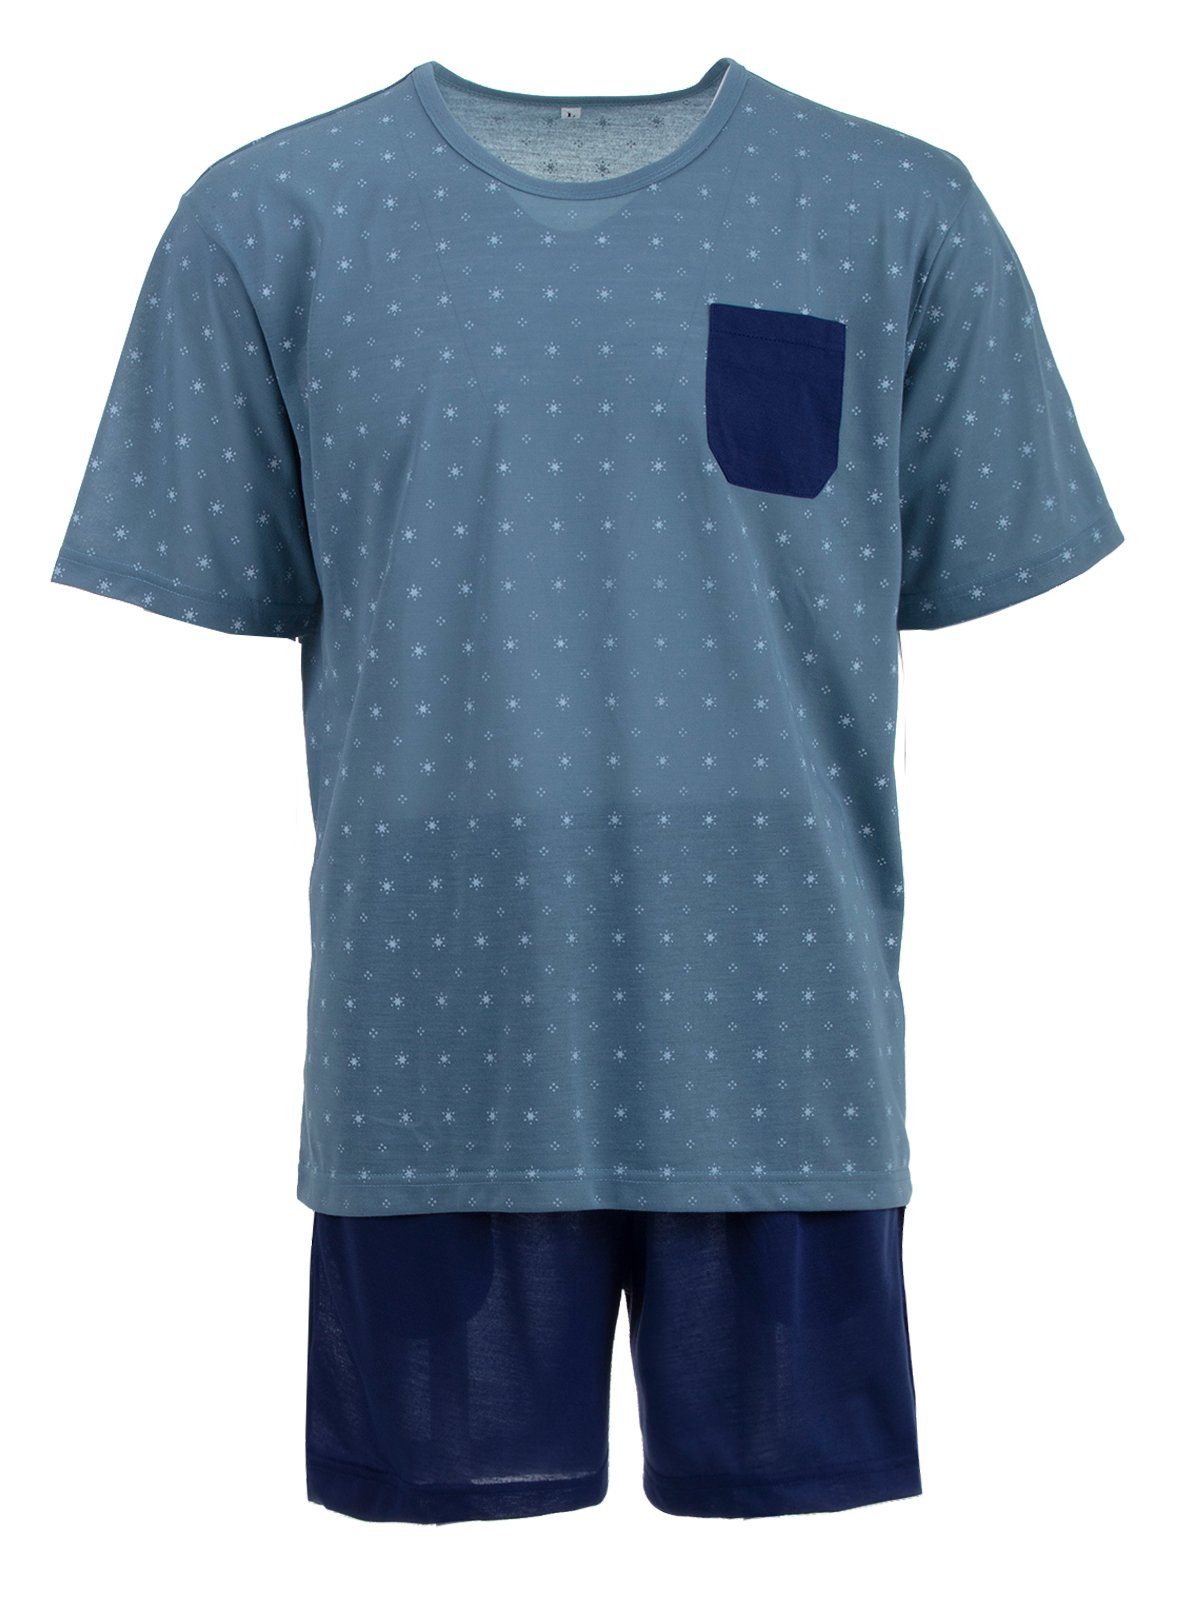 Lucky Schlafanzug Pyjama Set Shorty - Sonne Tasche graublau